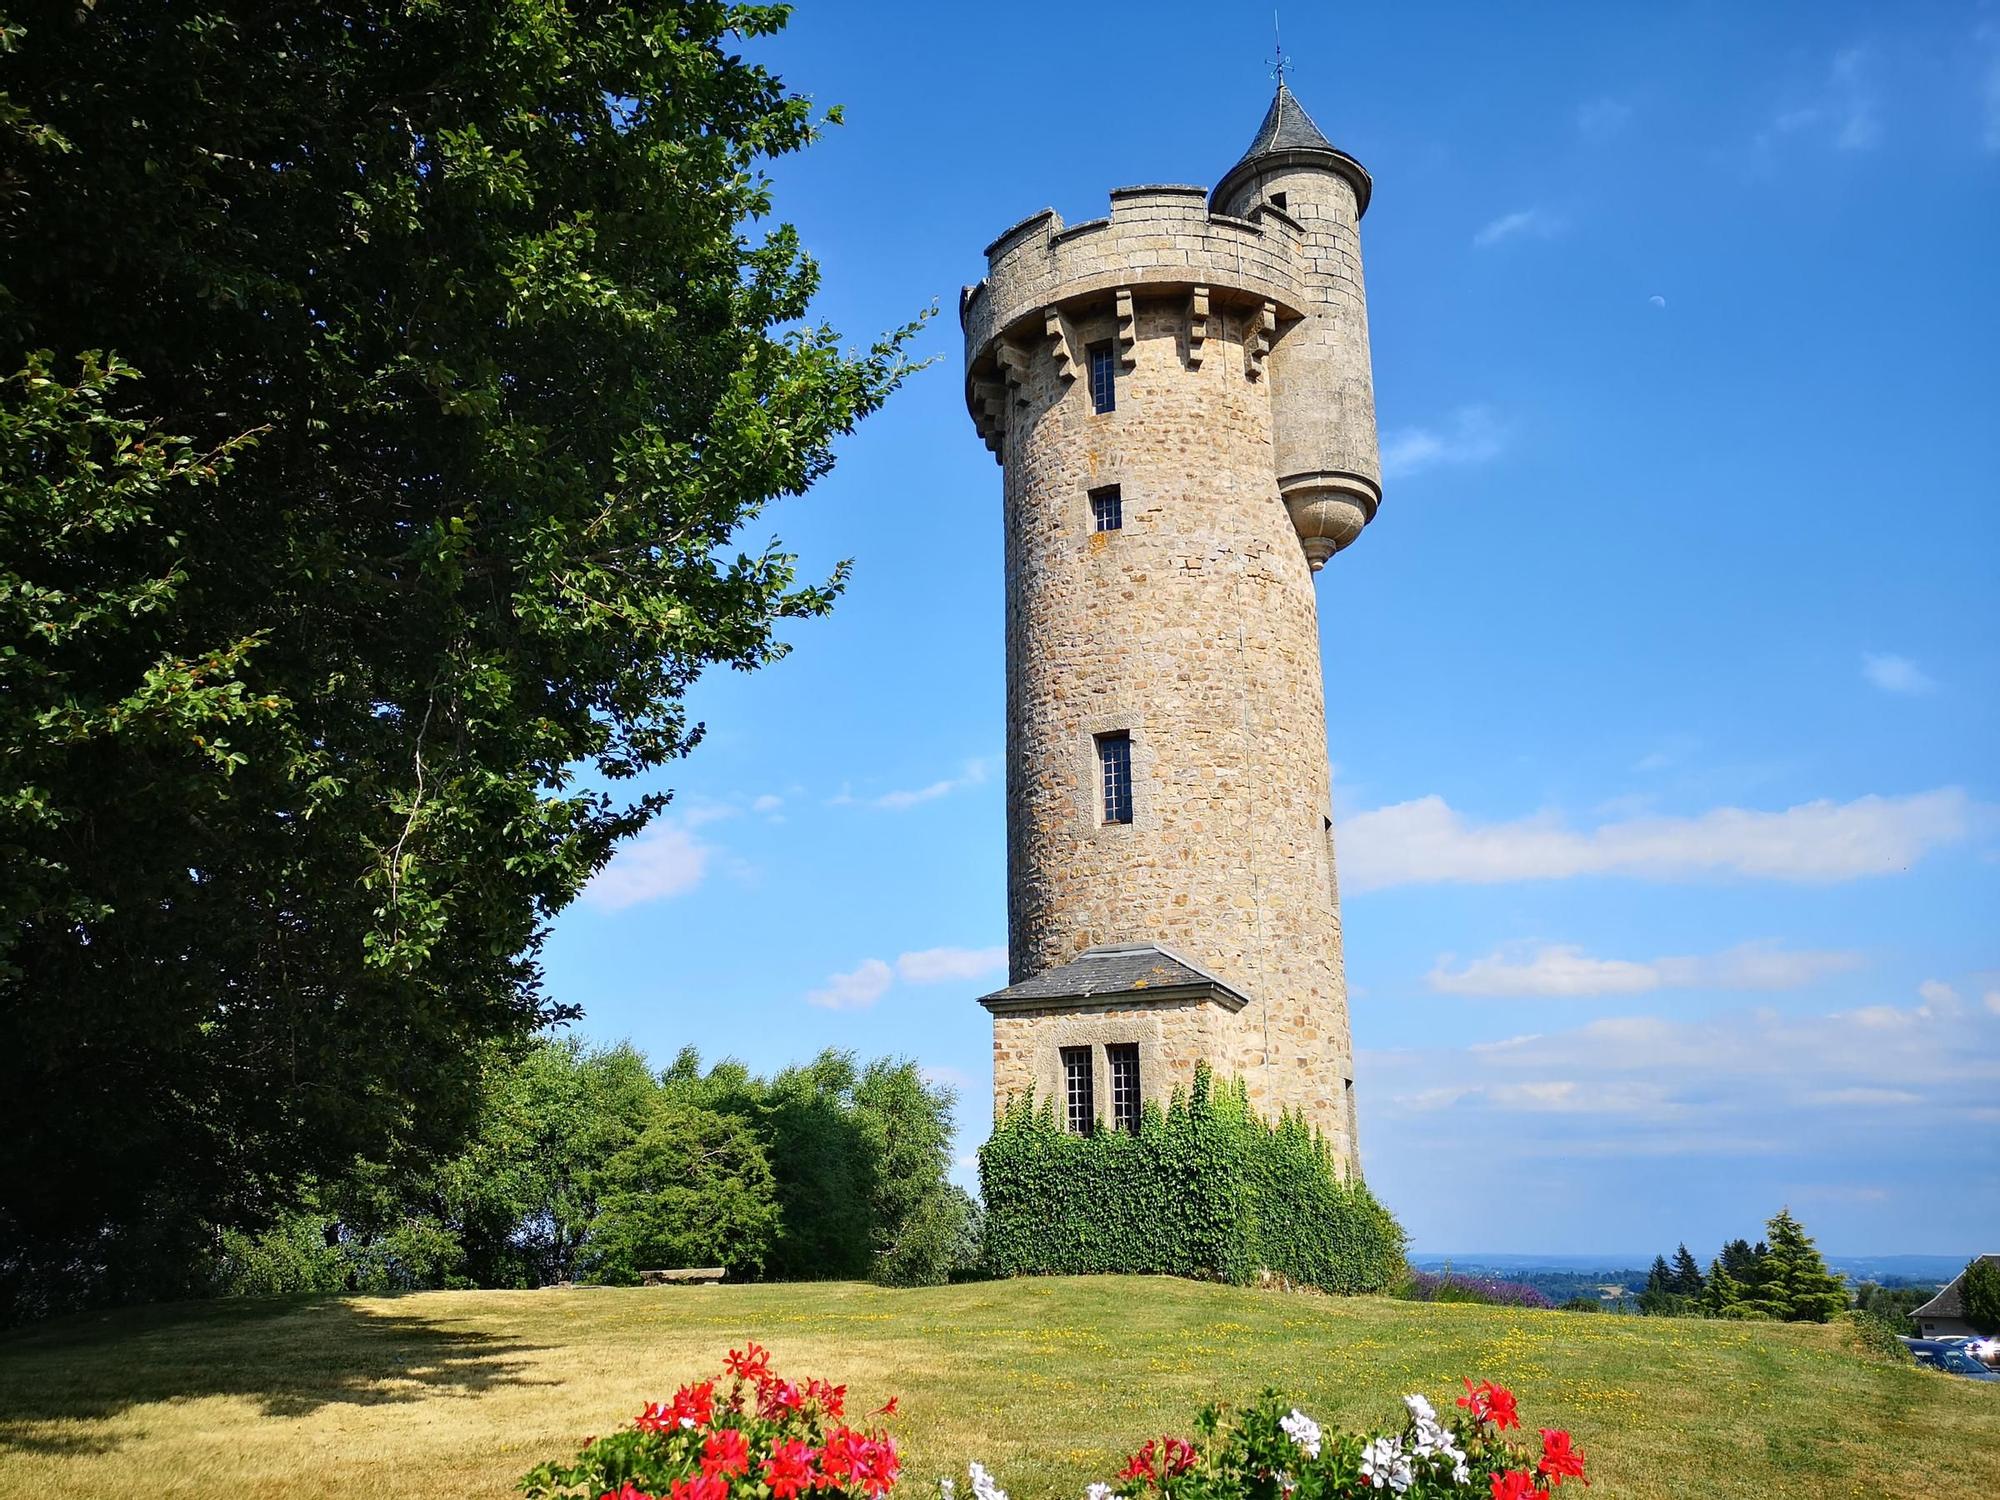 En este pueblo francés se encuentra la torre de Rapunzel.